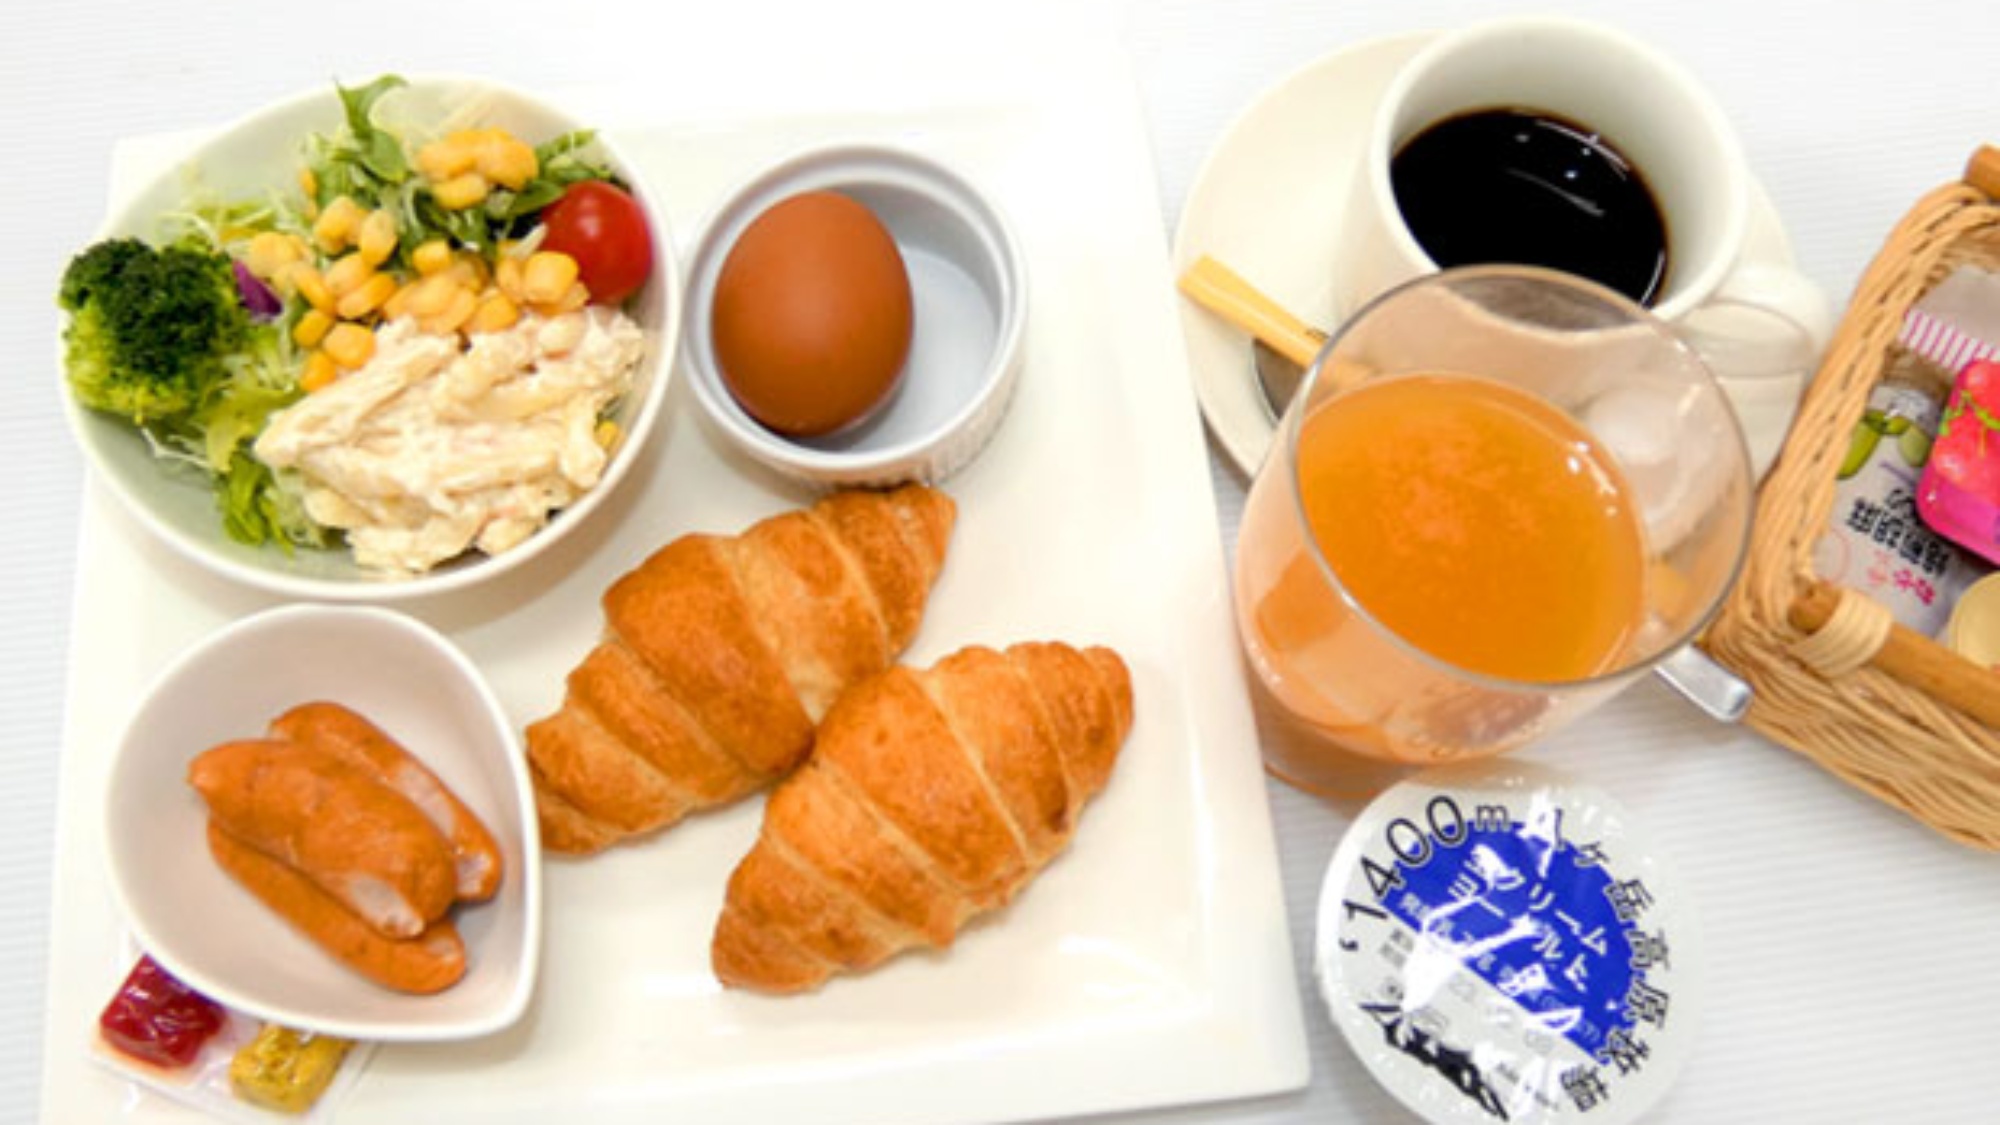 ・【洋朝食】クロワッサン、サラダ、ボイルエッグなどバランスのとれたメニューです